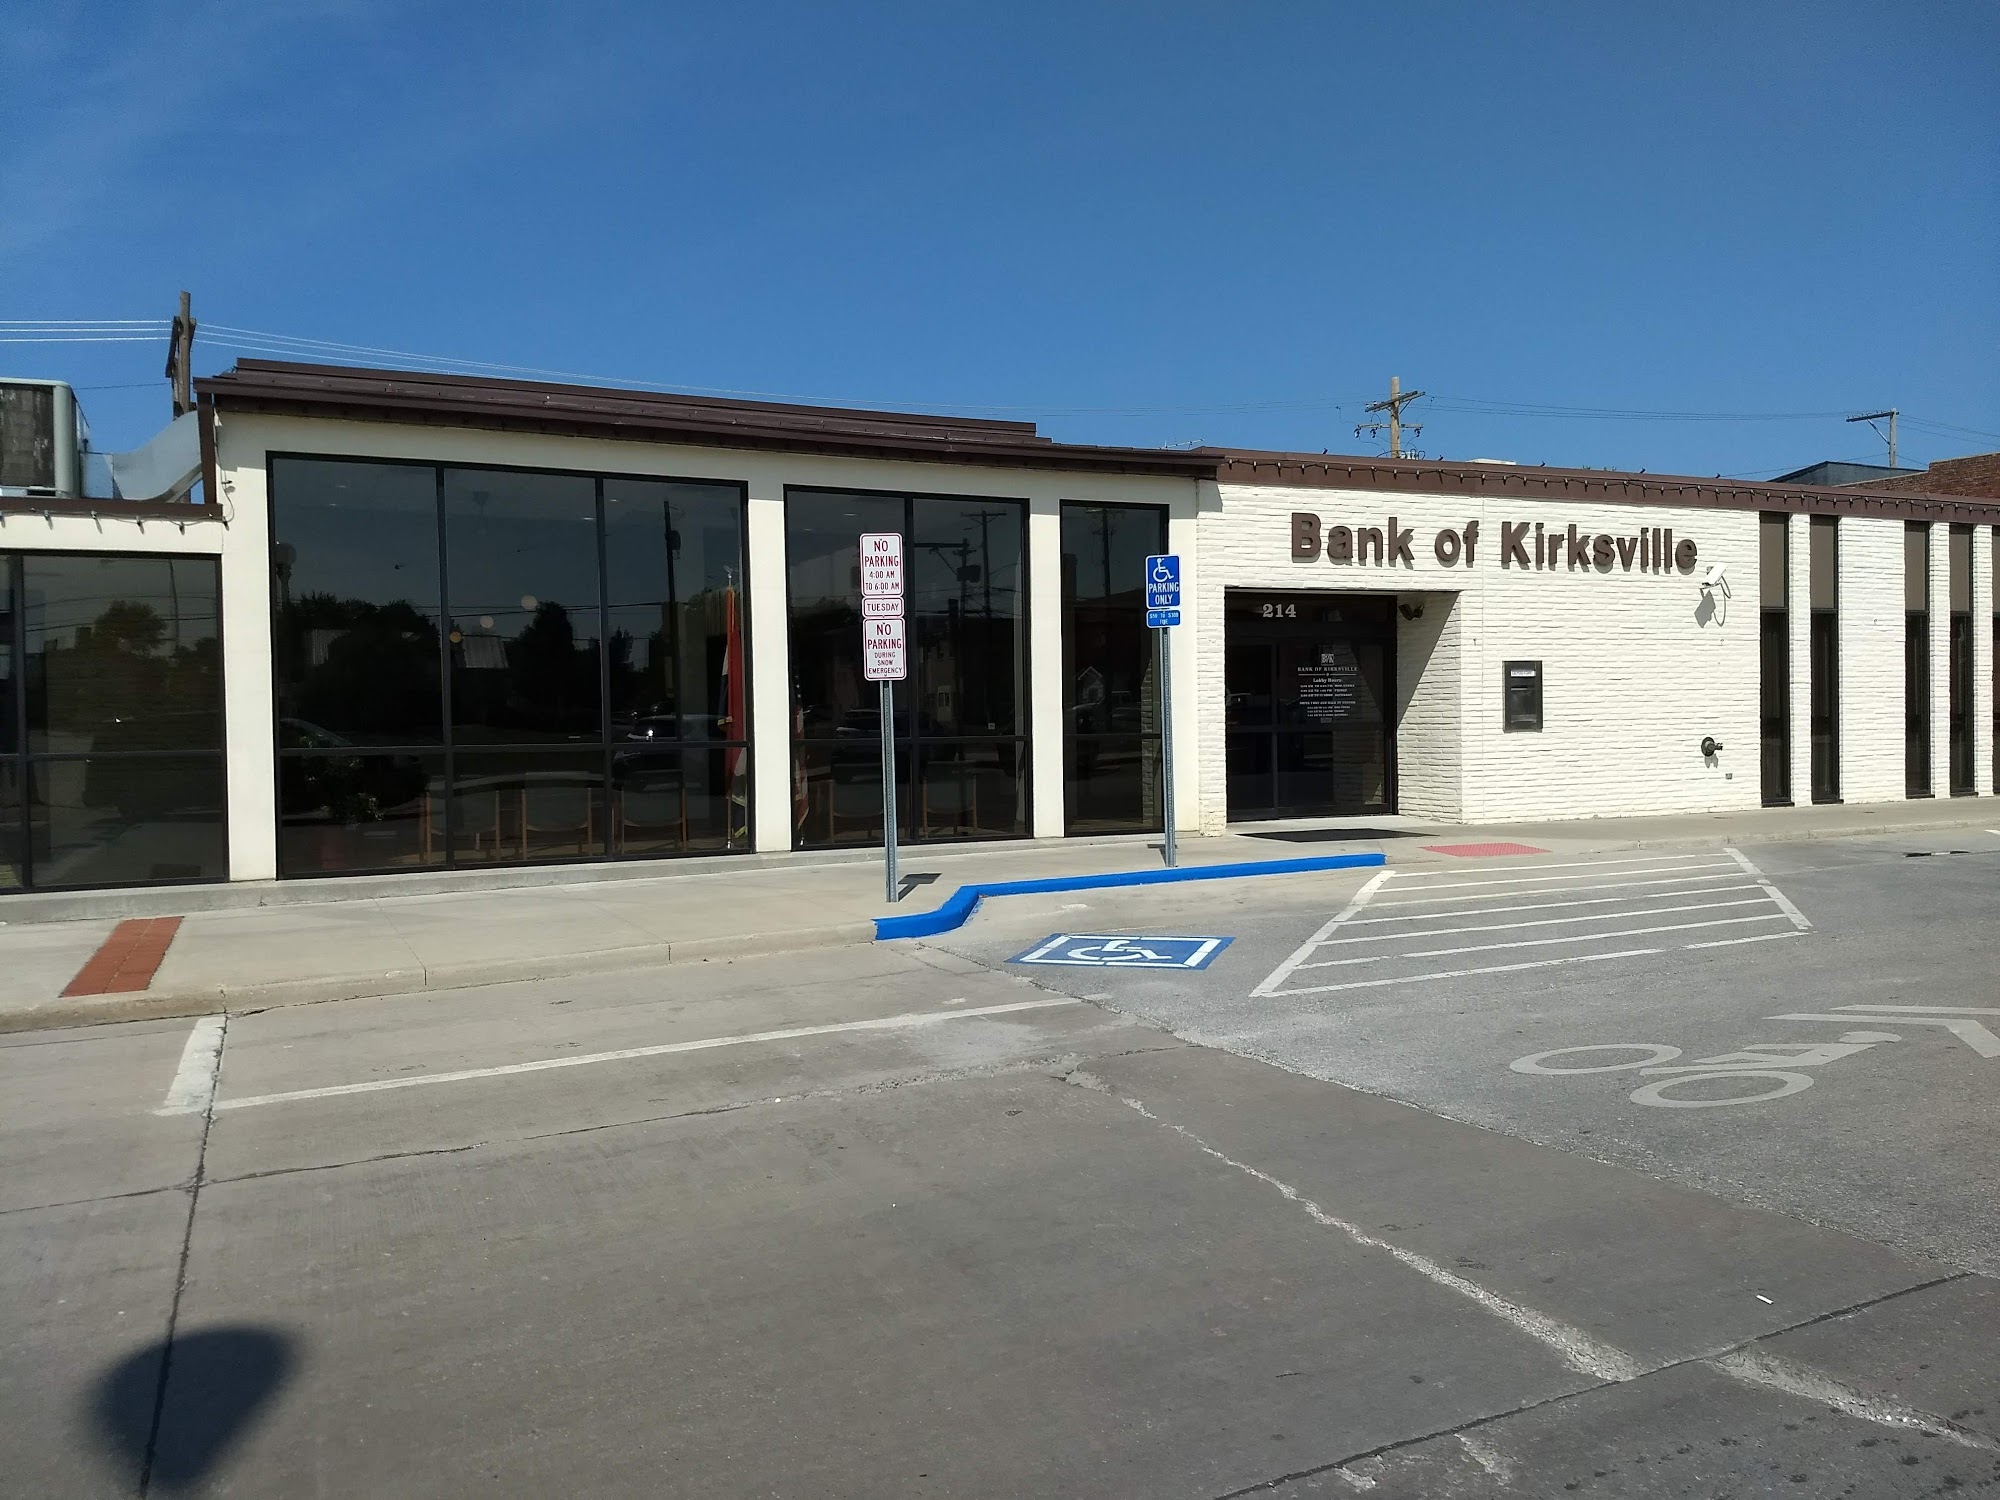 Bank of Kirksville